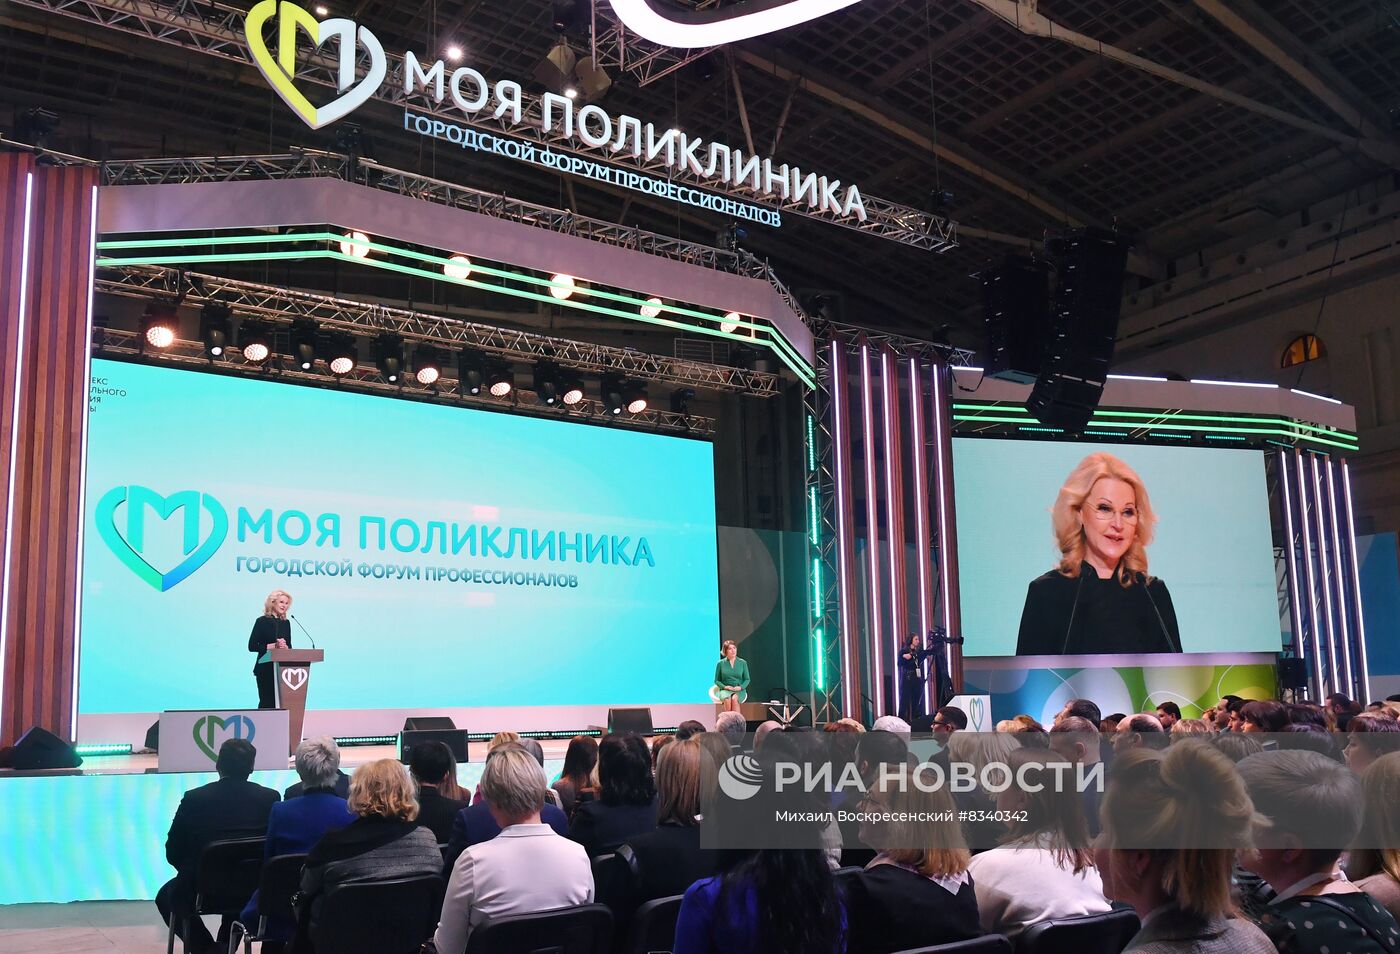 Форум "Моя поликлиника" в Москве 